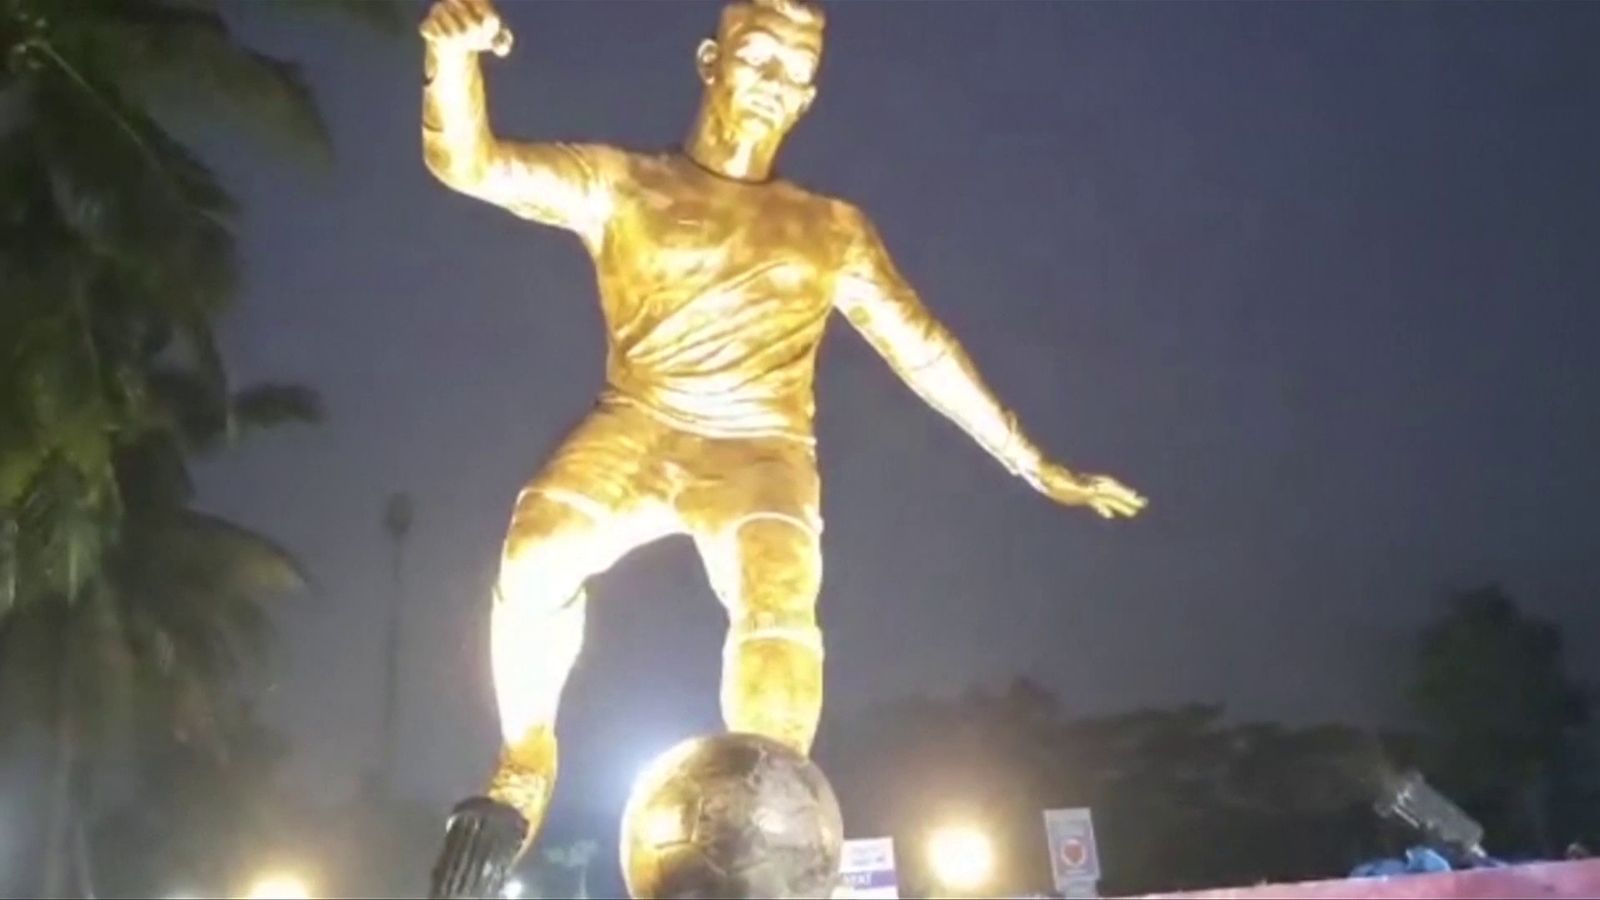 Cristiano Ronaldo: Estátua do atacante do Manchester United e de Portugal revelada em Goa, na Índia, para ‘inspirar a próxima geração’ |  notícias de futebol